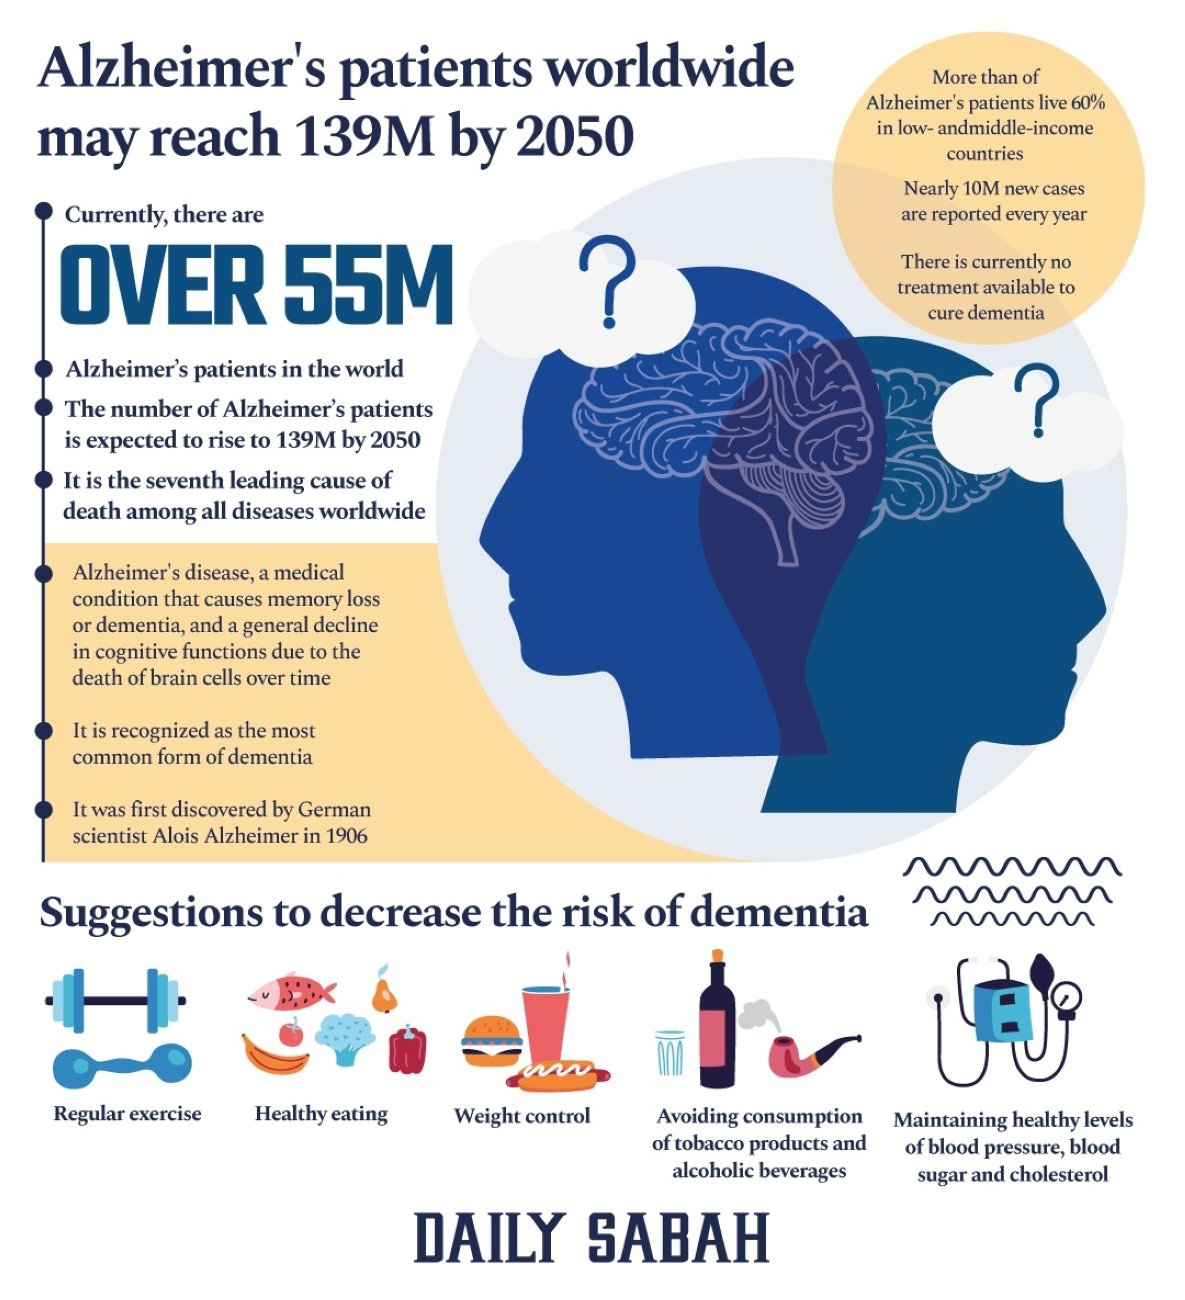 Sebuah infografis oleh Büşra ztürk dari Daily Sabah menyampaikan informasi tentang penyakit Alzheimer.